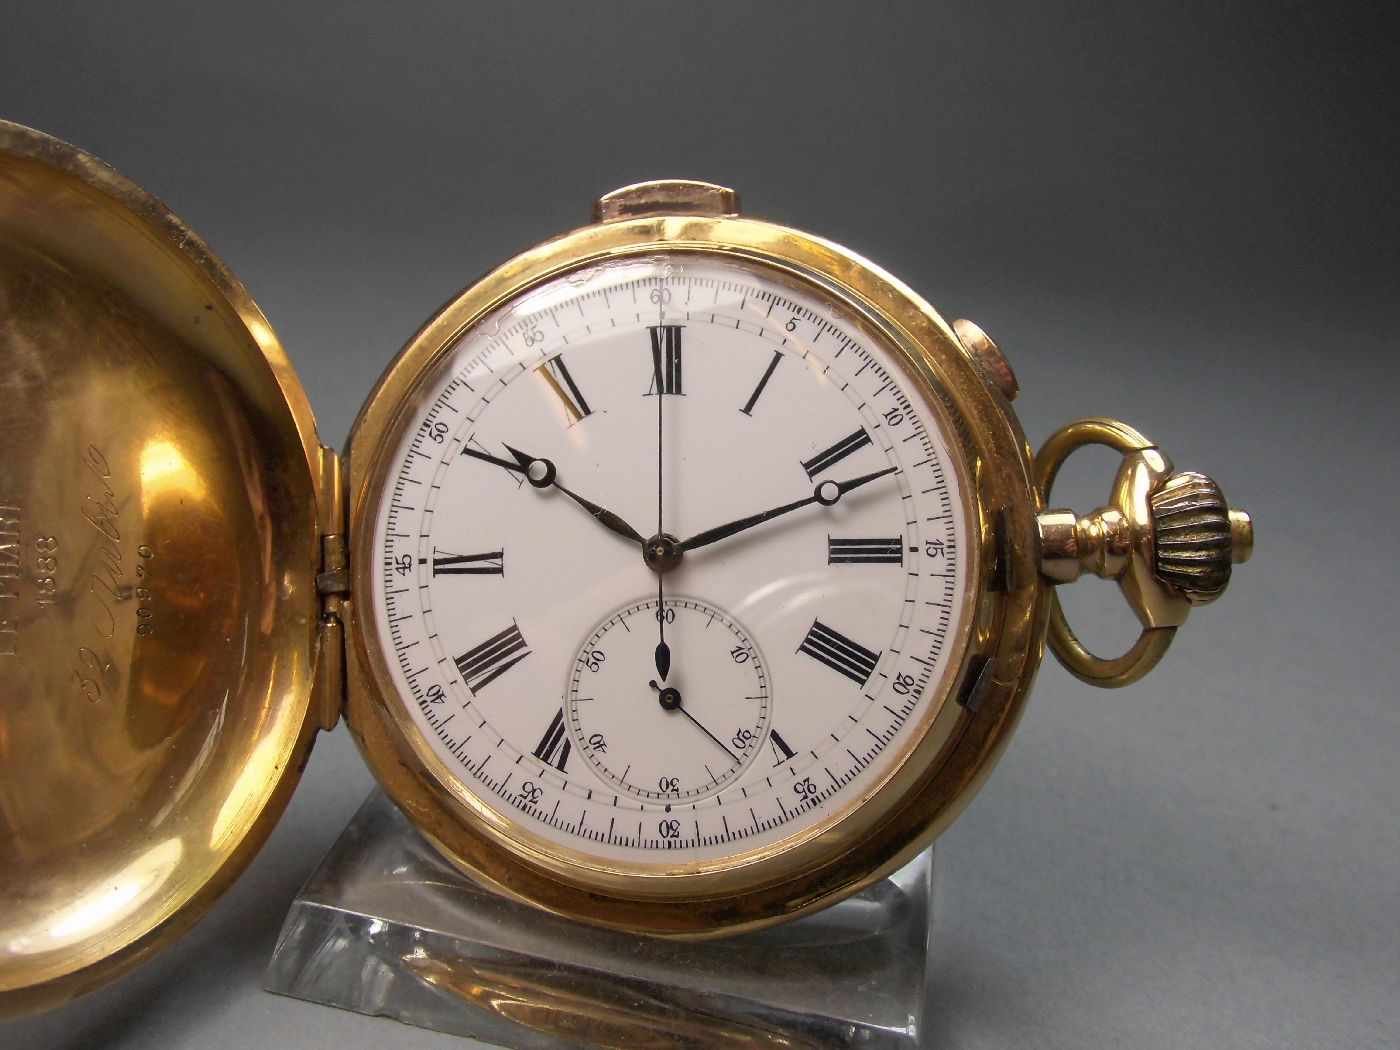 GROSSE GOLD - SAVONETTE, Minutenrepetition mit Chronograf, Taschenuhr / pocket watch, Schweiz, 1888, - Bild 2 aus 7